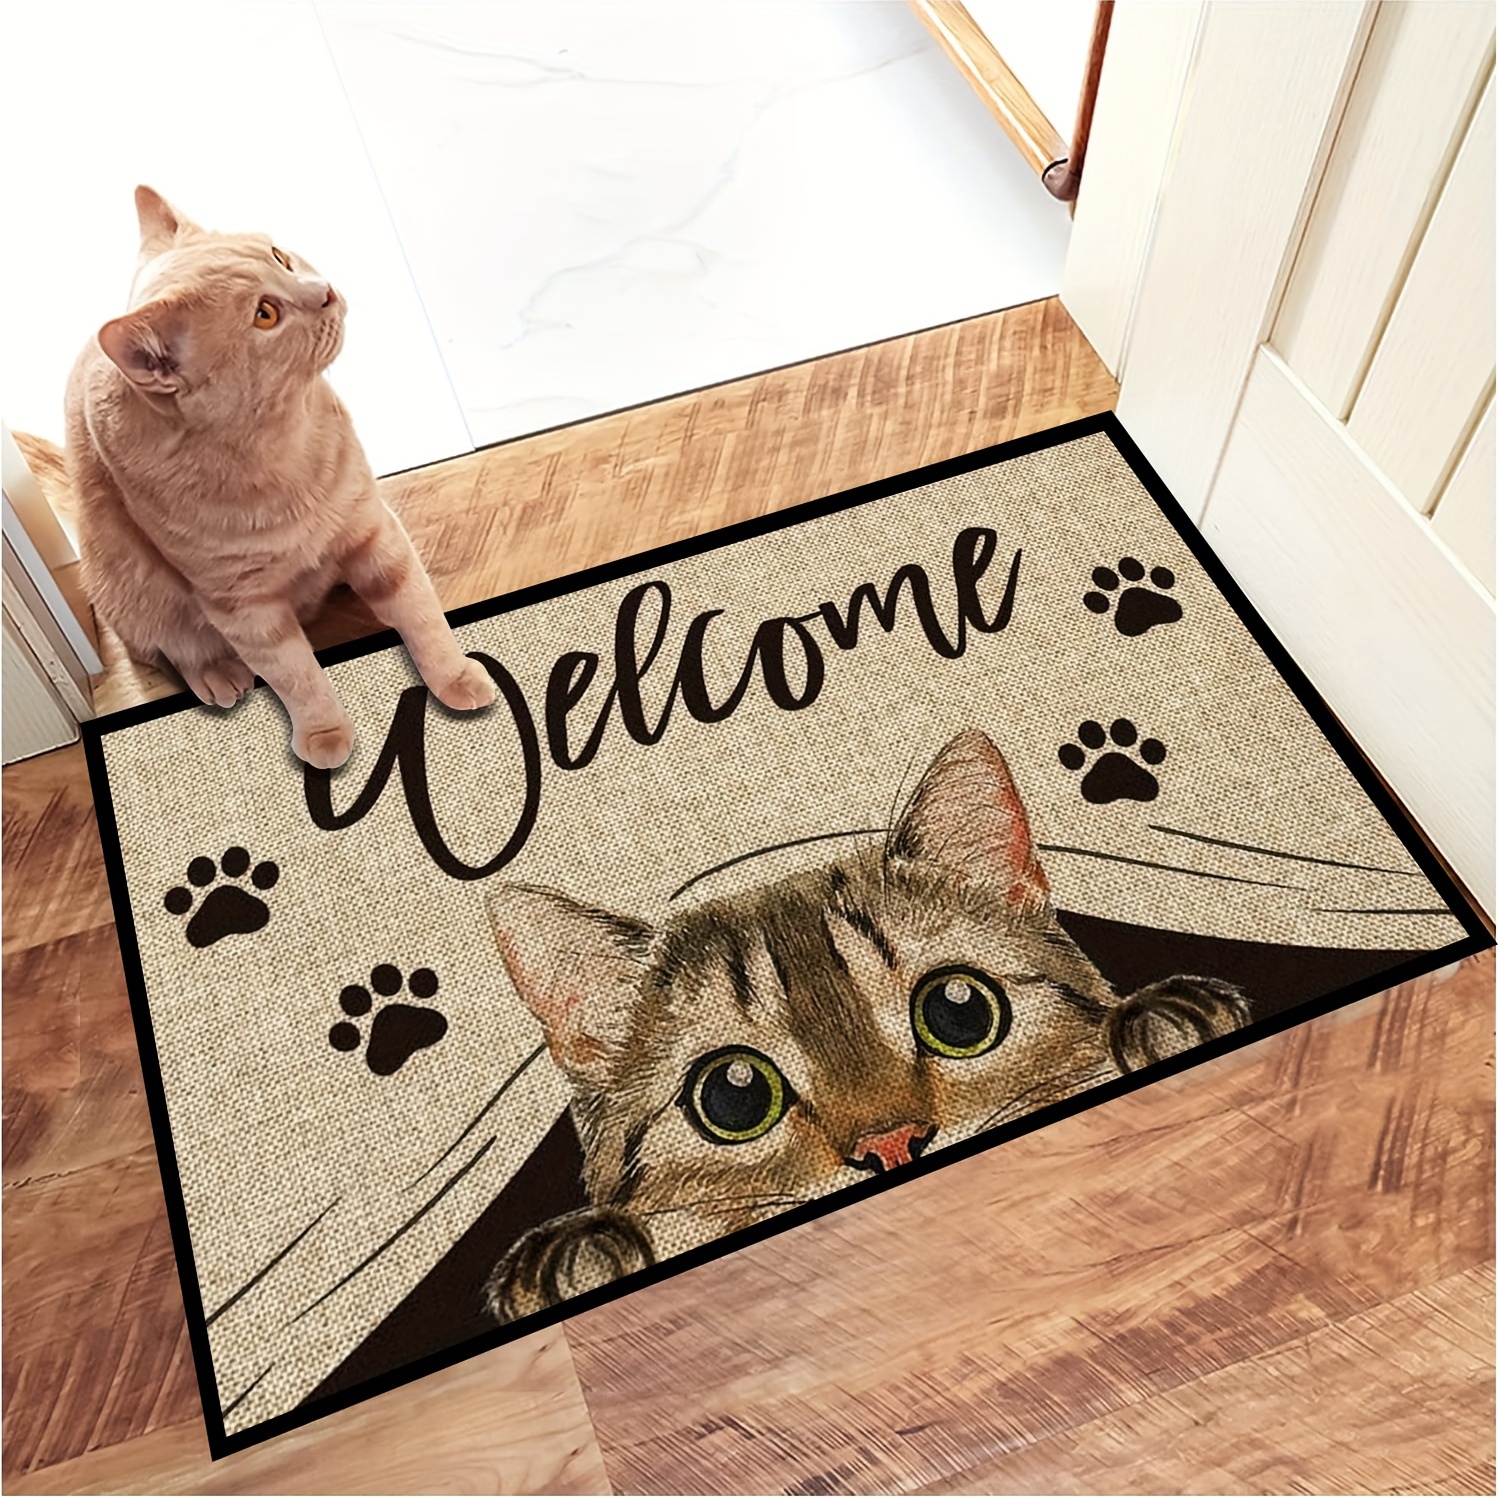 MEWJI original cute cat room door bathroom kitchen carpet floor